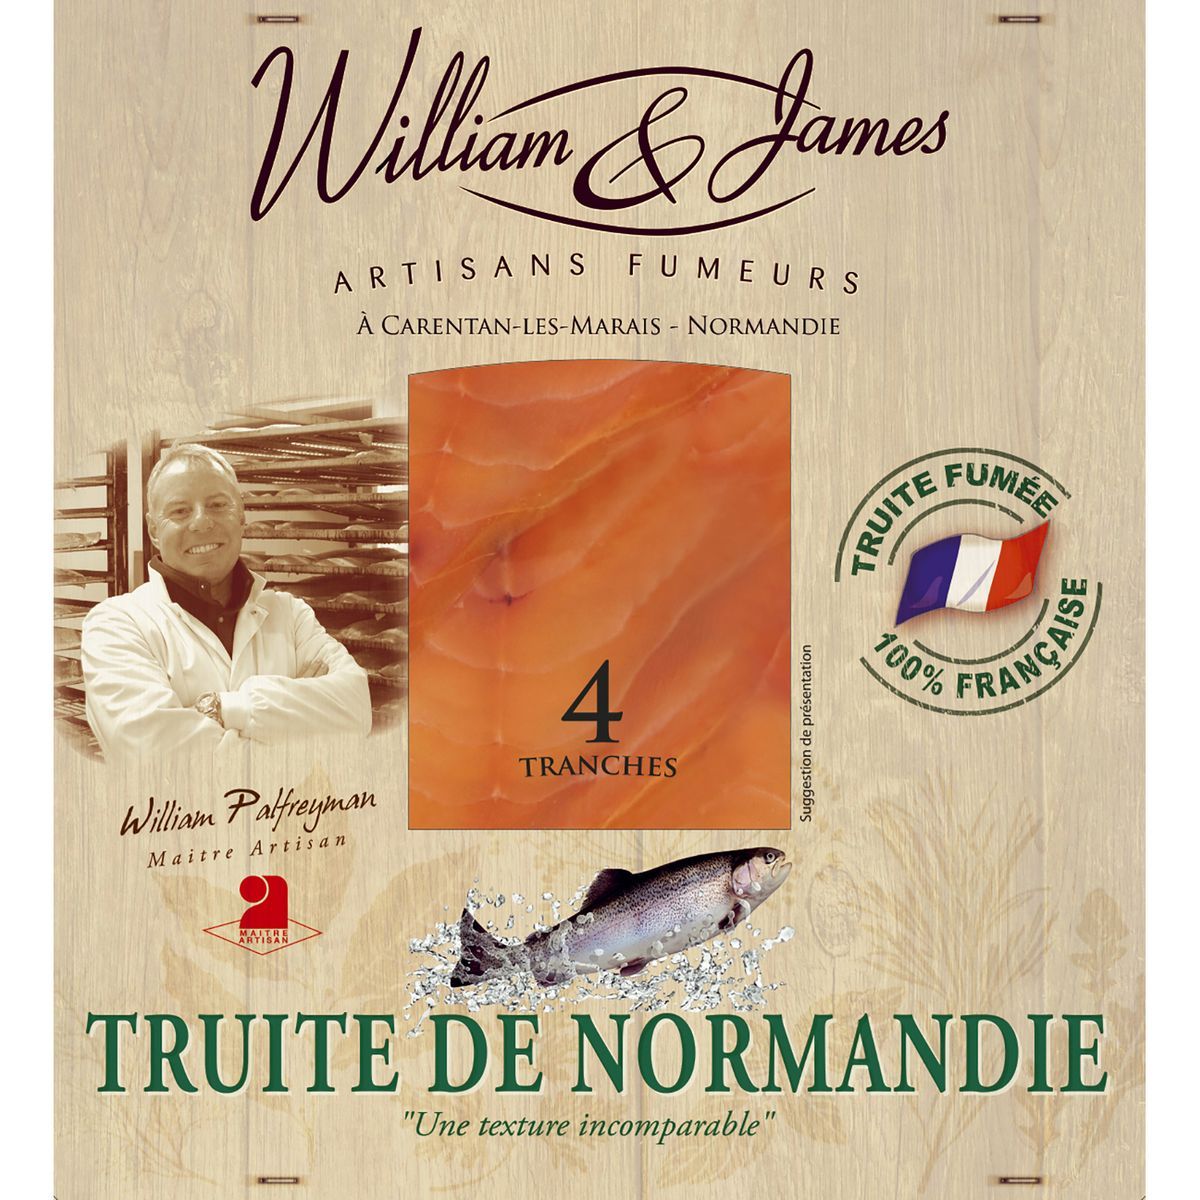 TRUITE DE NORMANDIE WILLIAM & JAMES